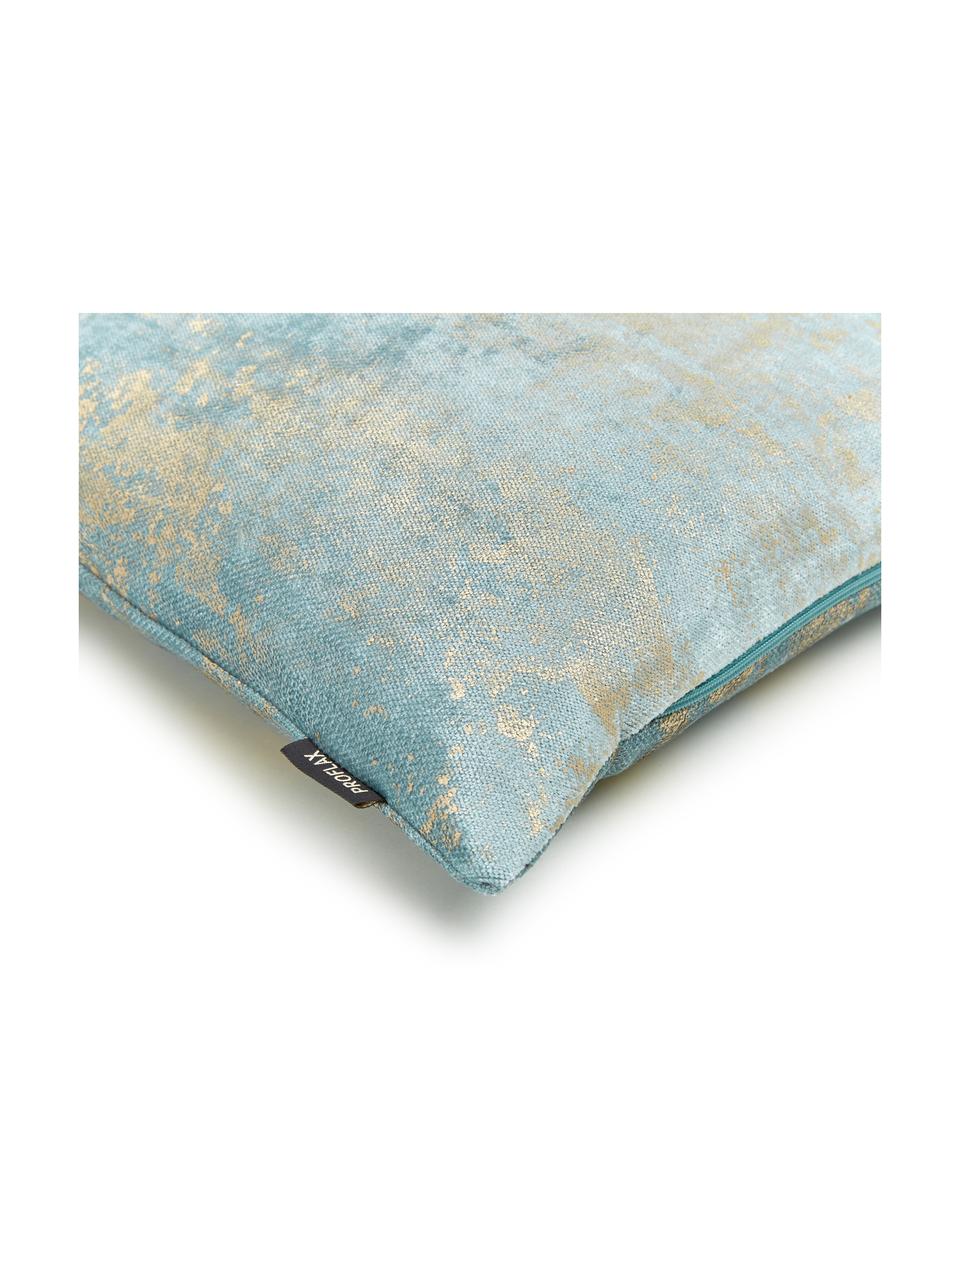 Fluwelen kussenhoes Shiny met glinsterend vintage patroon, Bovenzijde: polyesterfluweel, Onderzijde: polyester, Licht turquoise, 40 x 40 cm